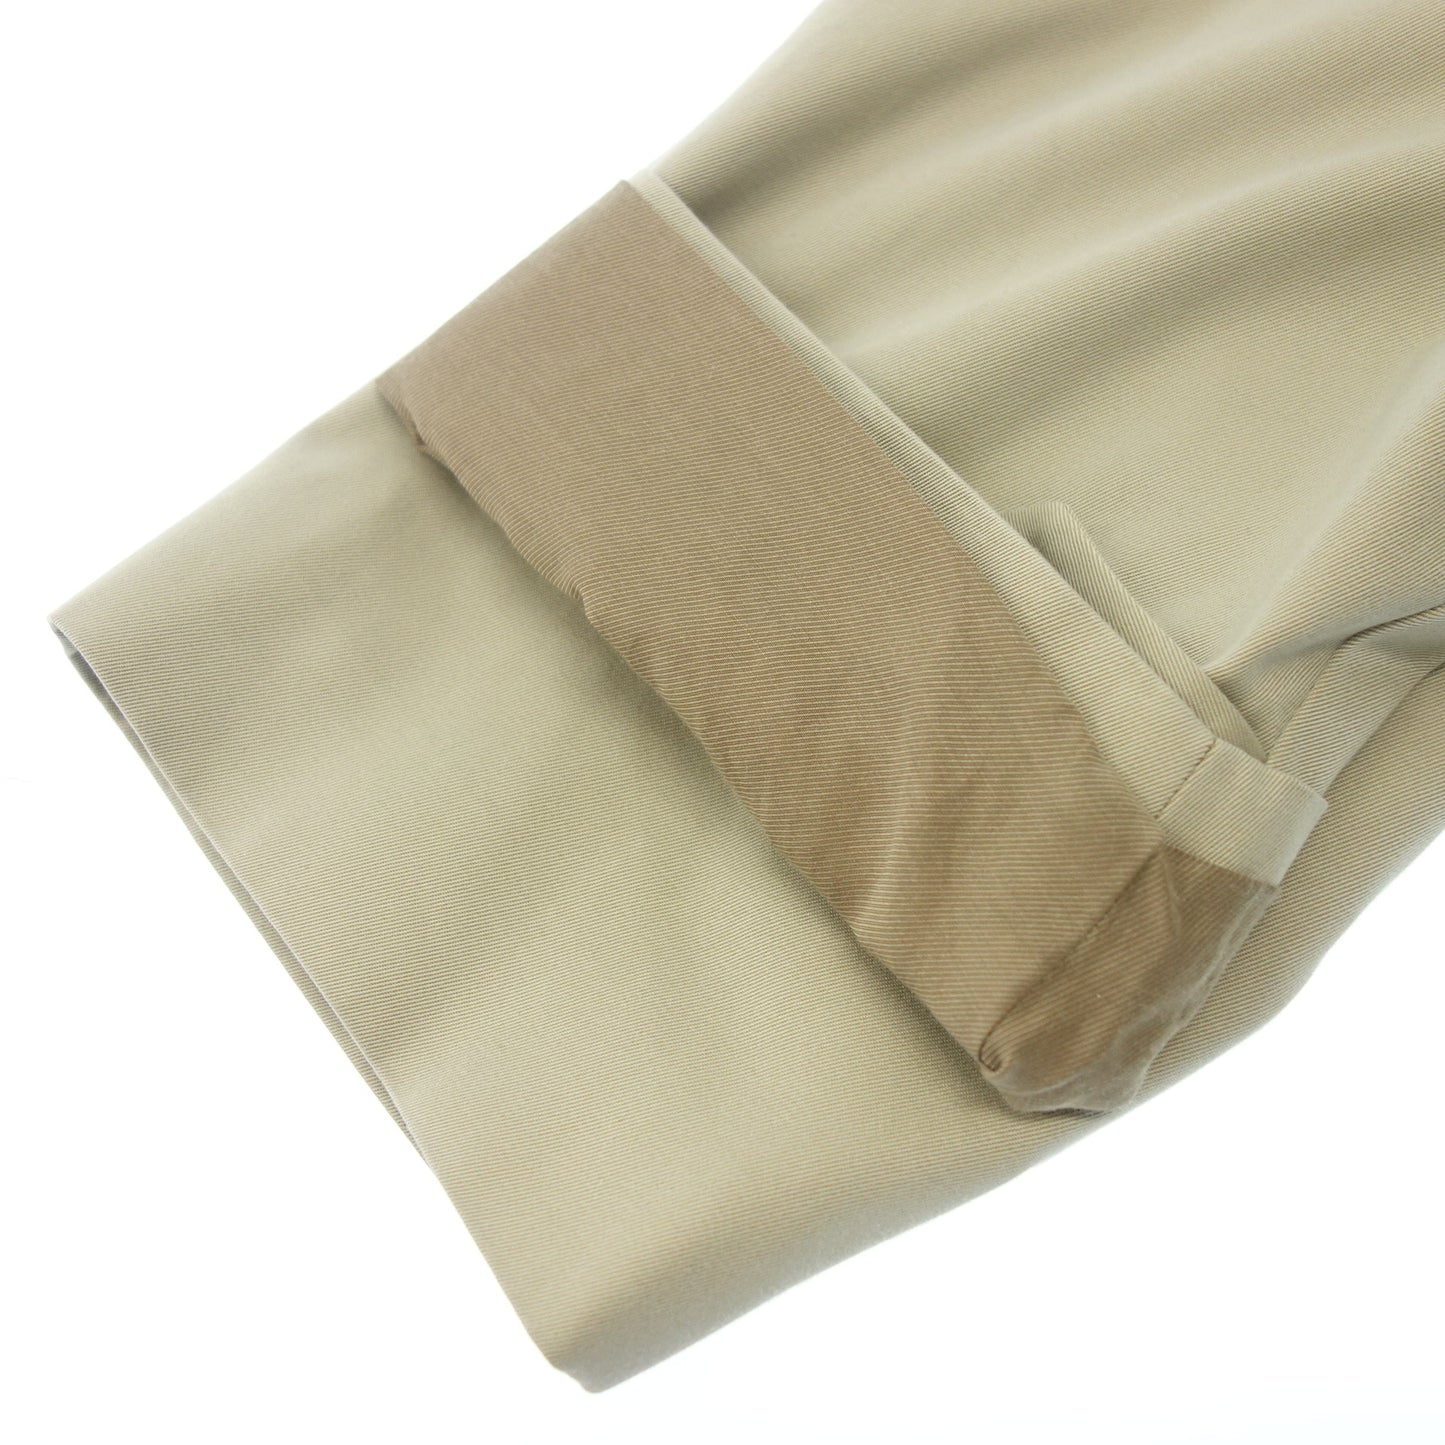 Good condition ◆ Komori Cotton Gabber Tie Locken Coat with liner W03-04001 22AW 2 Beige Men's COMOLI [AFA17] 